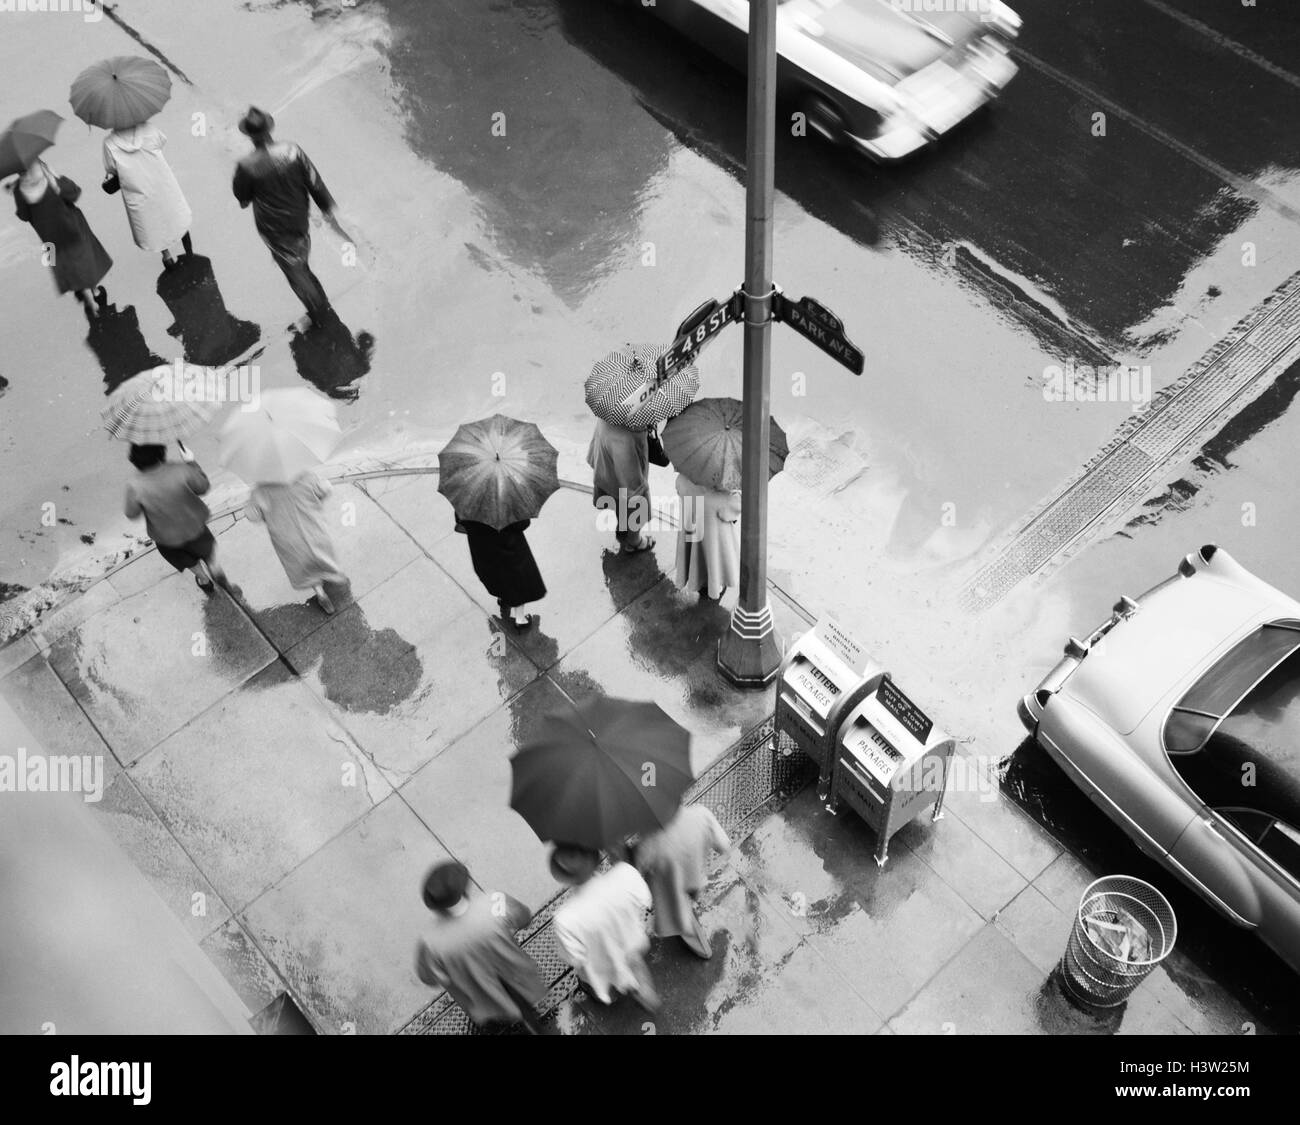 Antena 1950 DE LA ESQUINA DE LA CALLE EN LA LLUVIA peatones con paraguas  coches pavimento mojado PARK AVE & 48TH STREET NUEVA YORK, ESTADOS UNIDOS  Fotografía de stock - Alamy